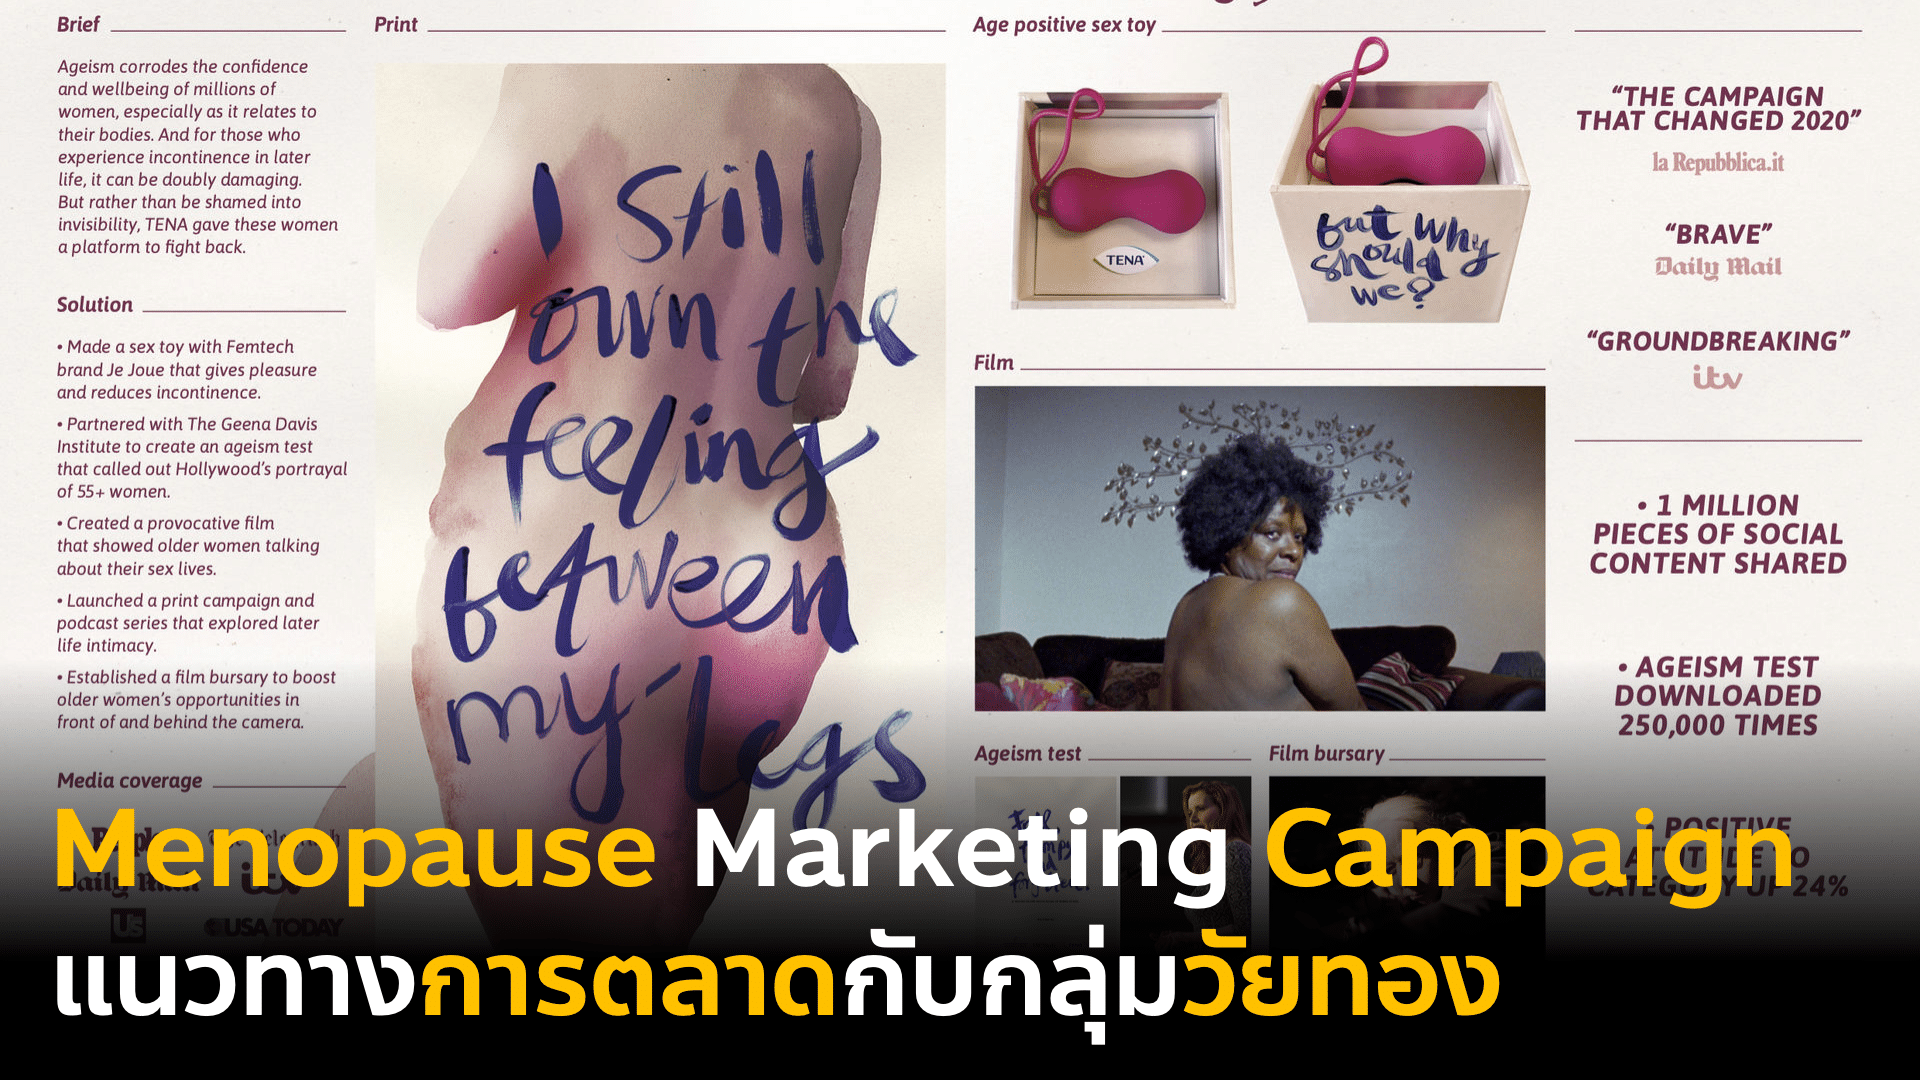 Menopause Marketing Campaign แนวทางการตลาดเจาะกลุ่มวัยทอง